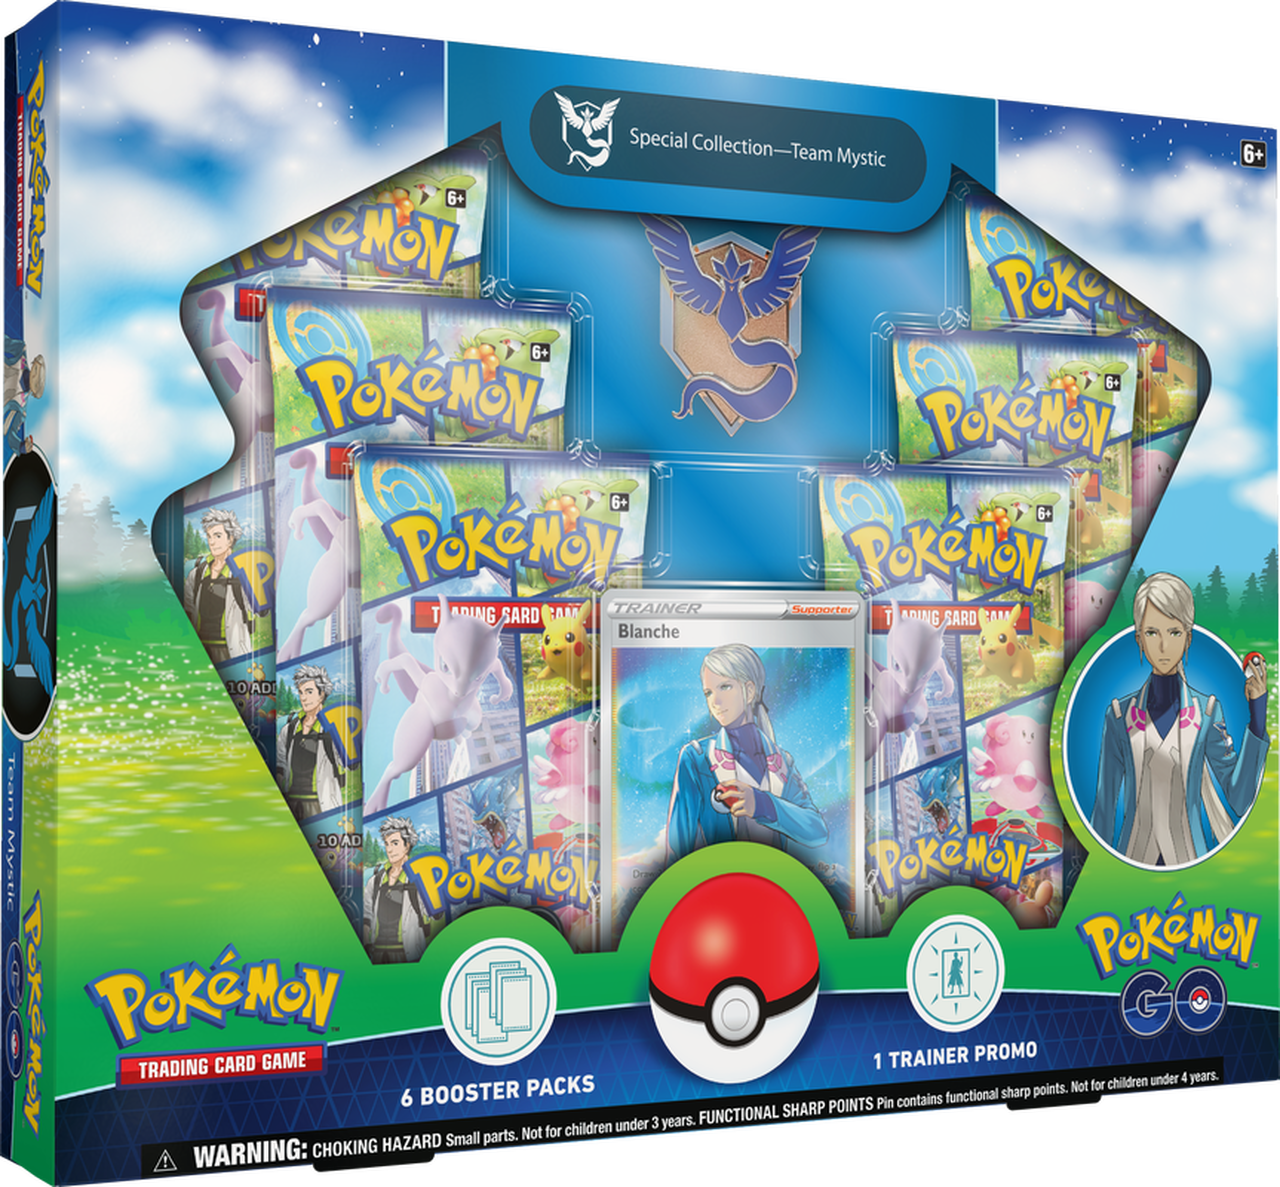 Pokémon TCG: Pokémon GO Special Collection - Team Mystic